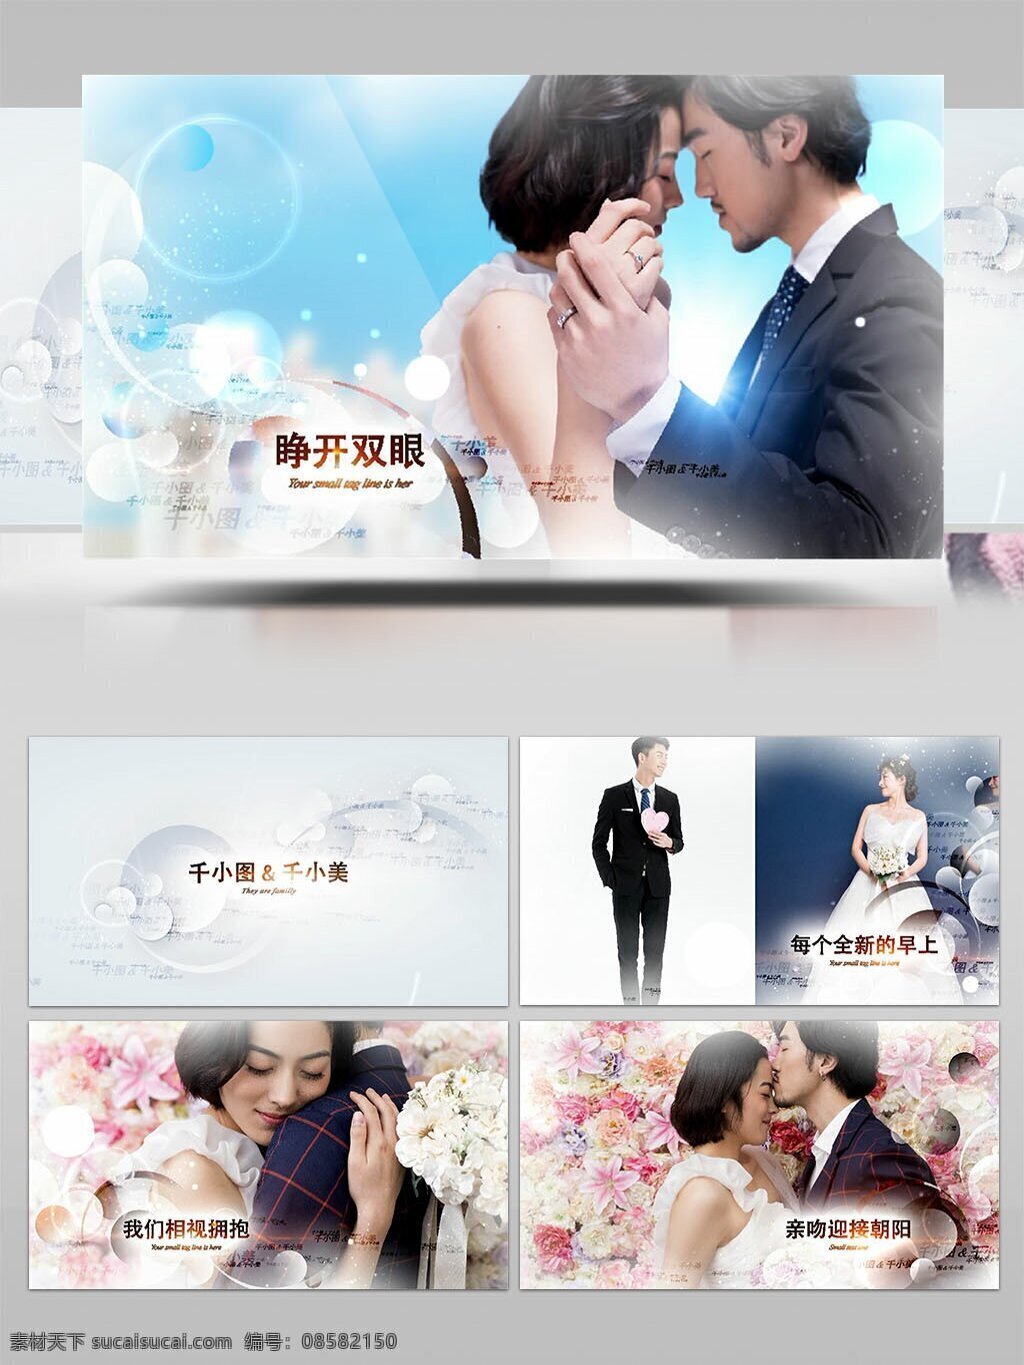 白色 圣洁 婚礼 开场 图像 展示 ae 模板 爱情 浪漫 梦幻 家庭 回忆 甜蜜 纪念 温馨